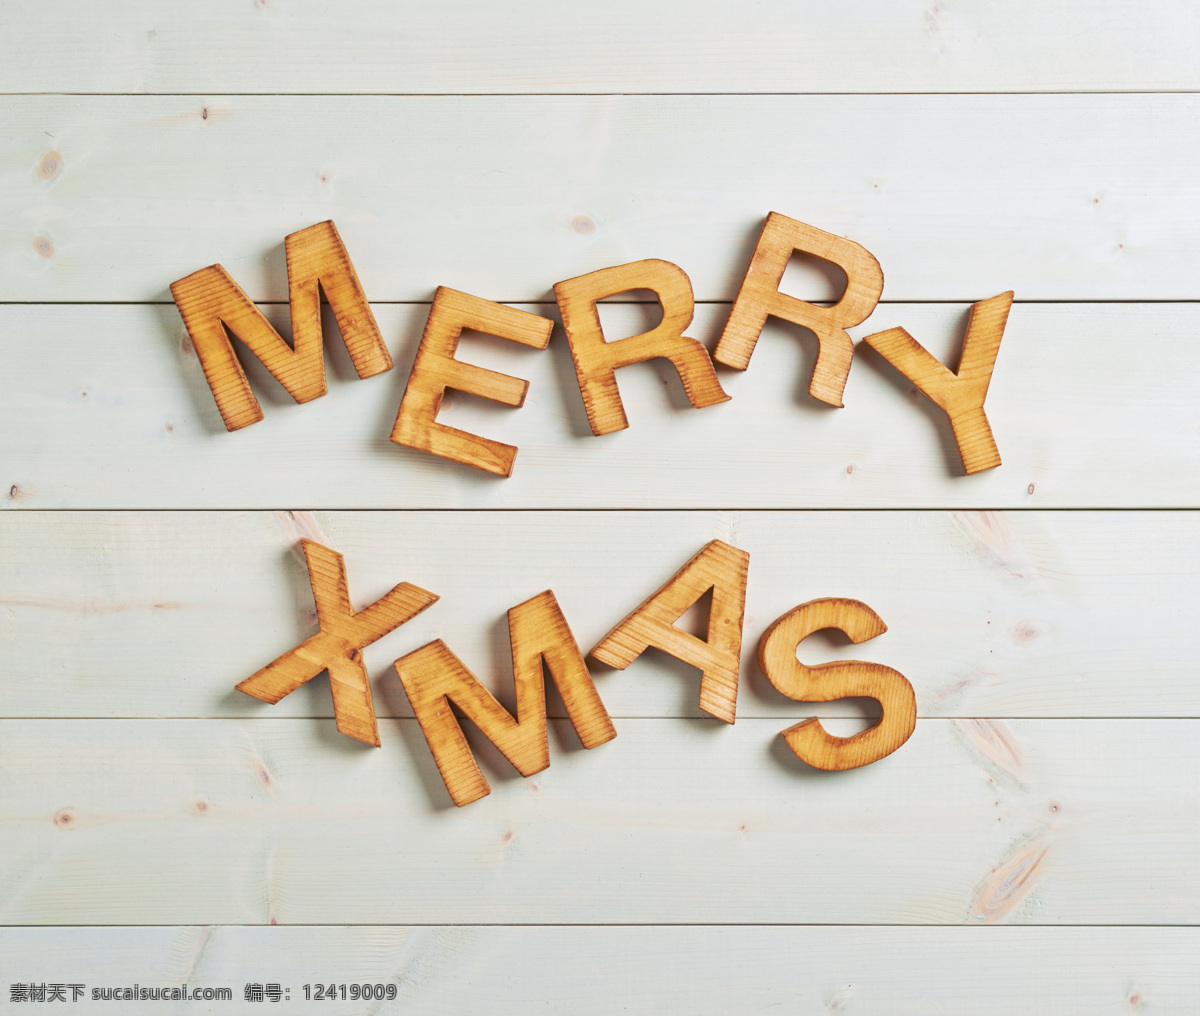 木板 上 立体 字母 圣诞节背景 圣诞节 圣诞节元素 立体字母 节日庆典 生活百科